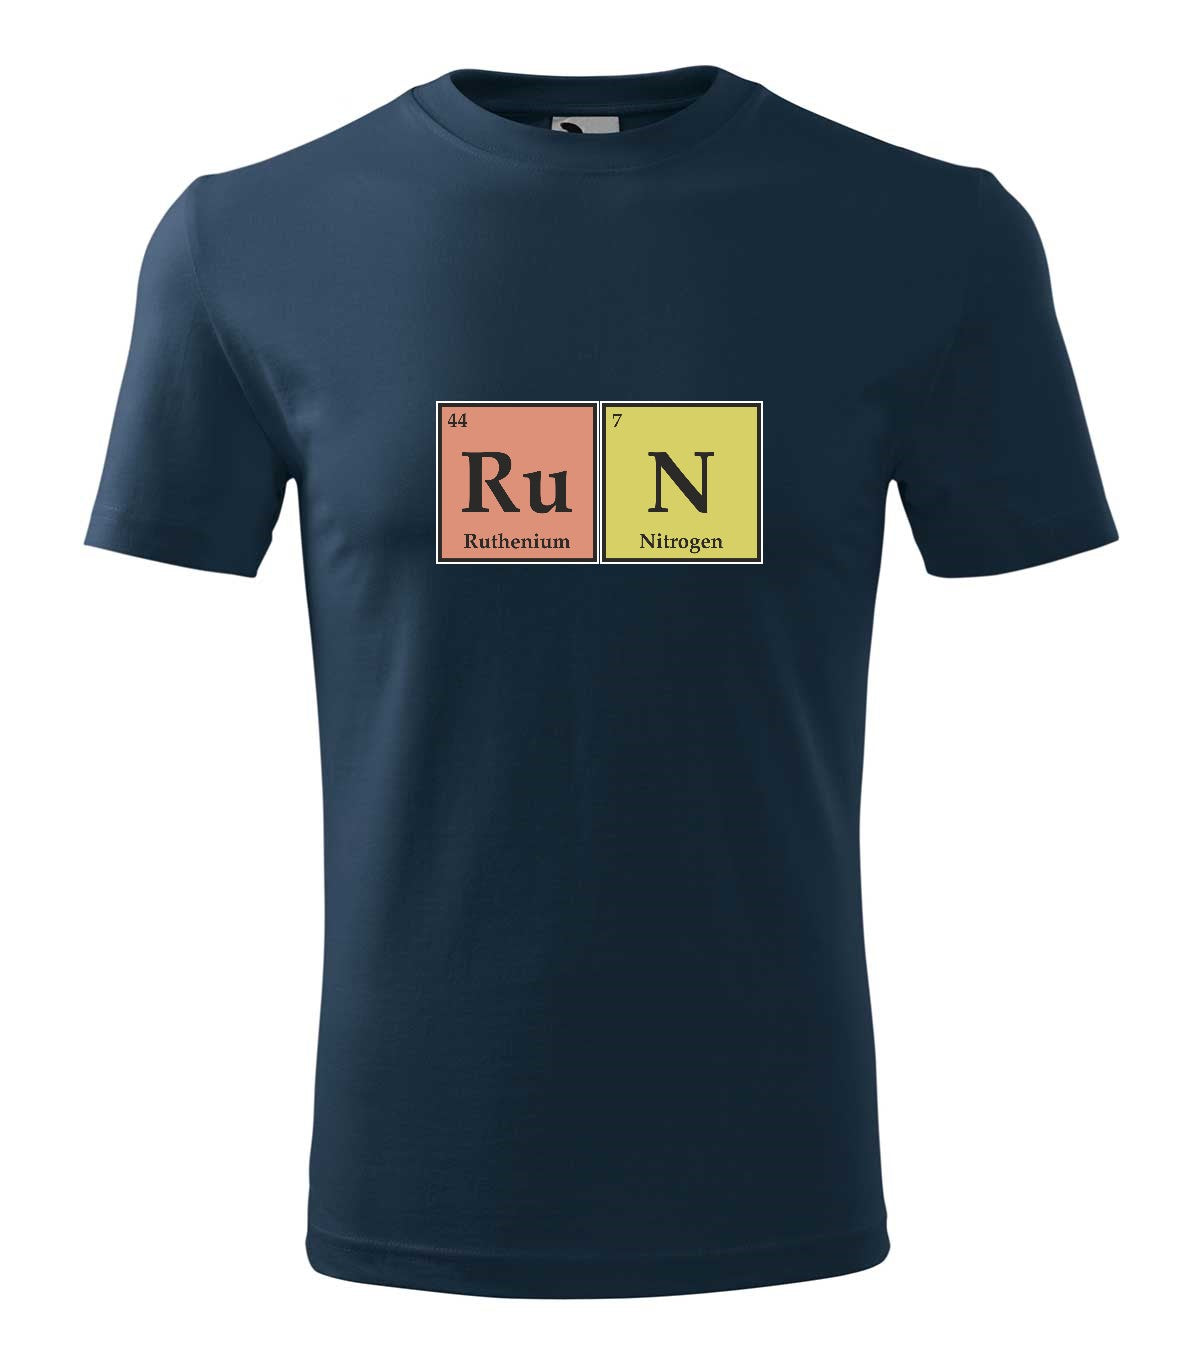 RuN kémia férfi póló